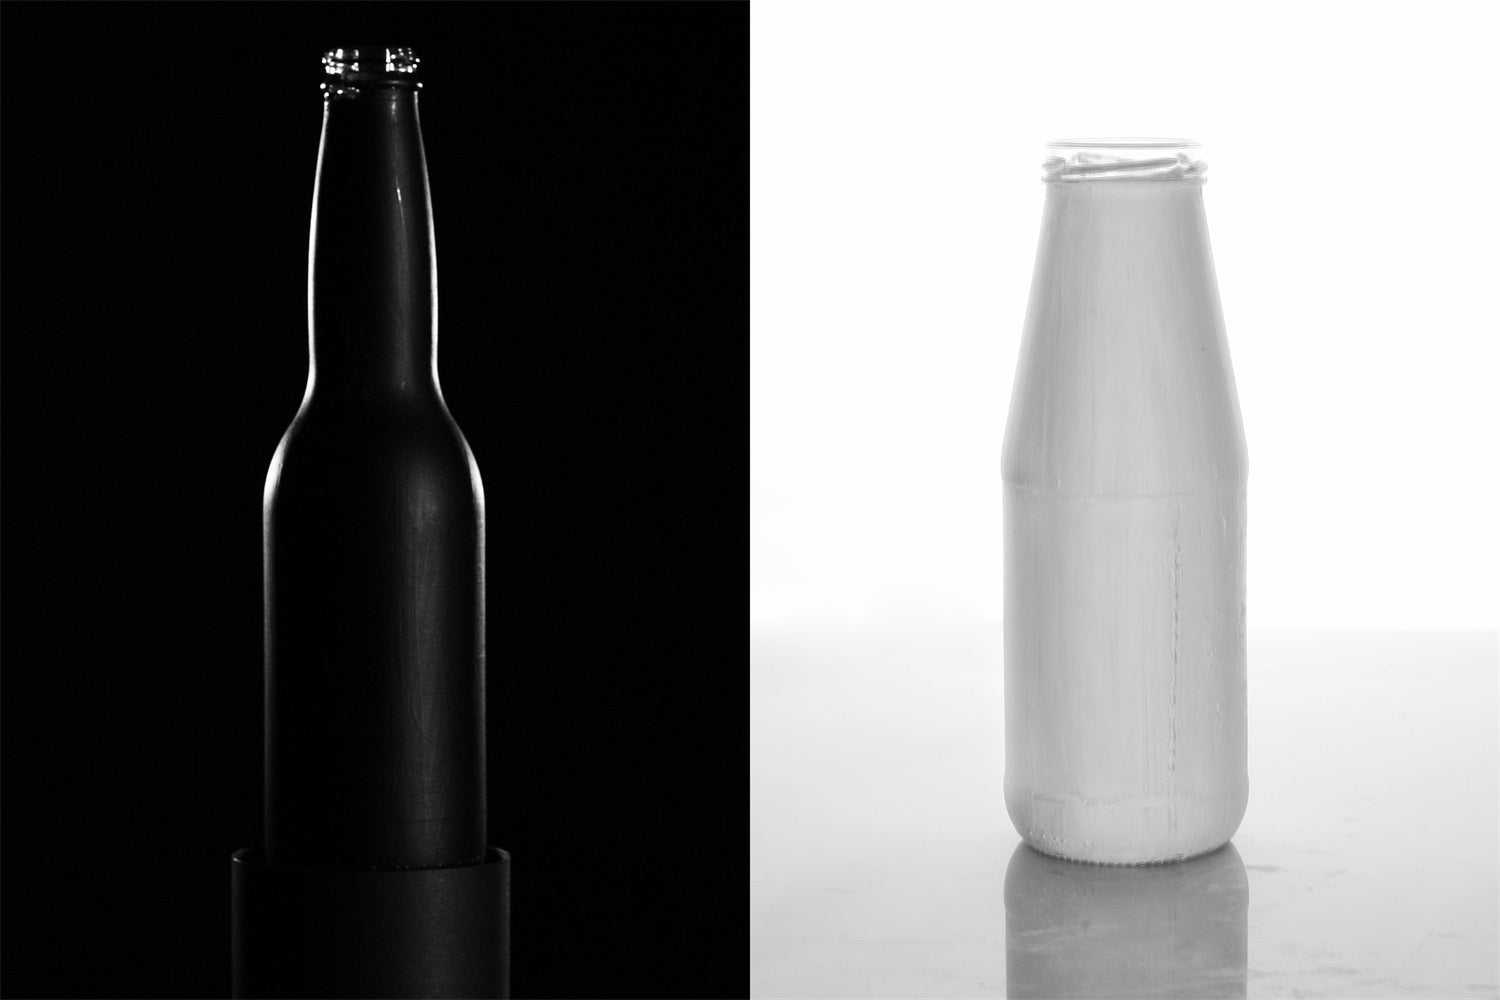 black bottle and white bottle